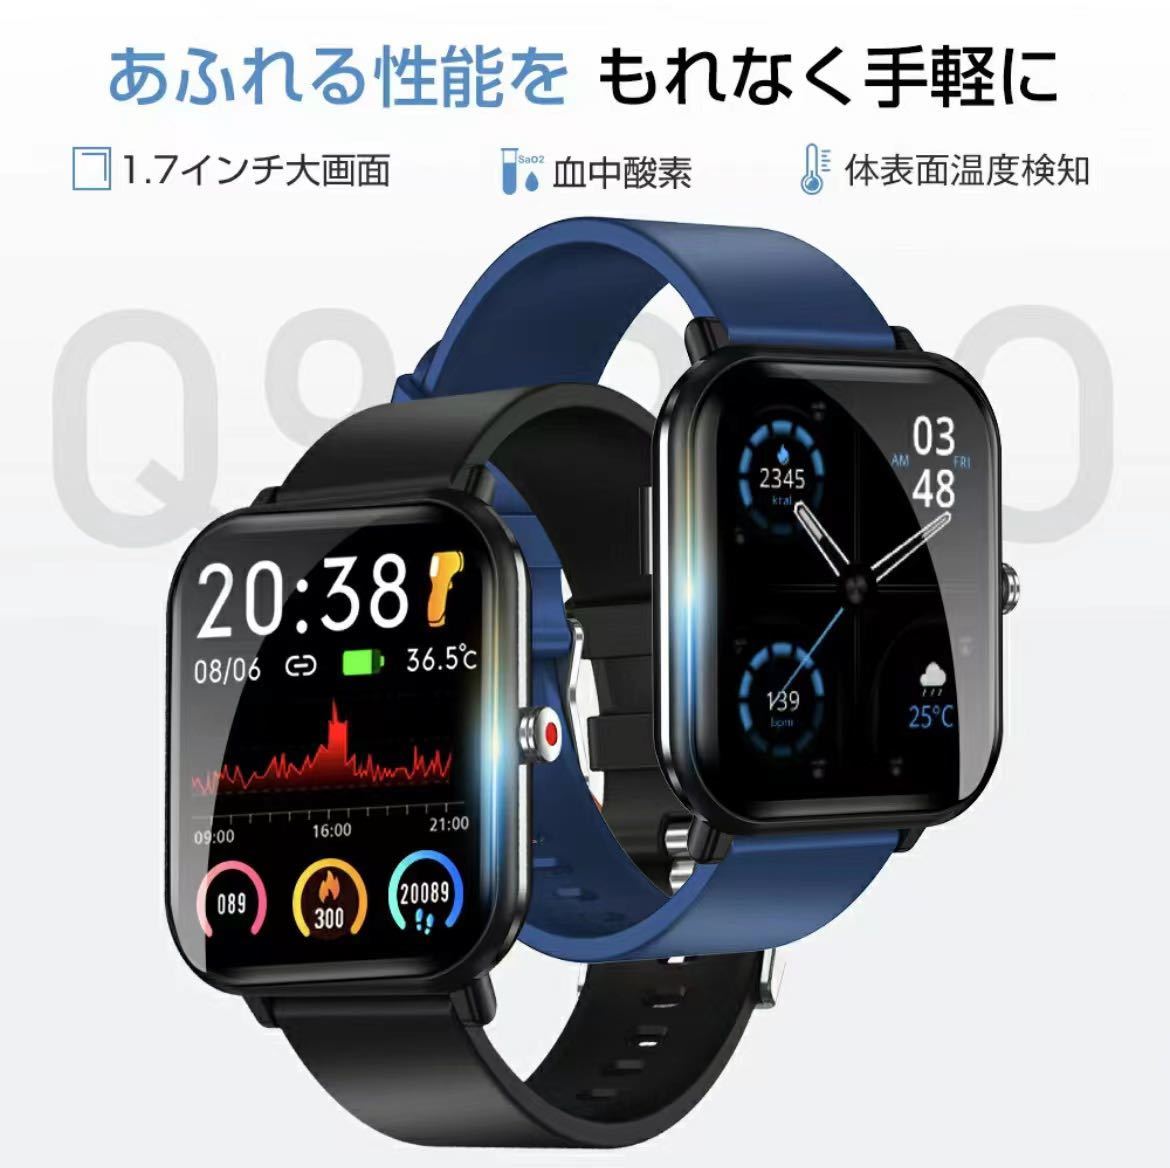 スマートウォッチ 1.7インチ画面 IP68防水 GPS連携 着信通知 睡眠記録 アラーム日本語説明書 iOS&Android適用_画像1